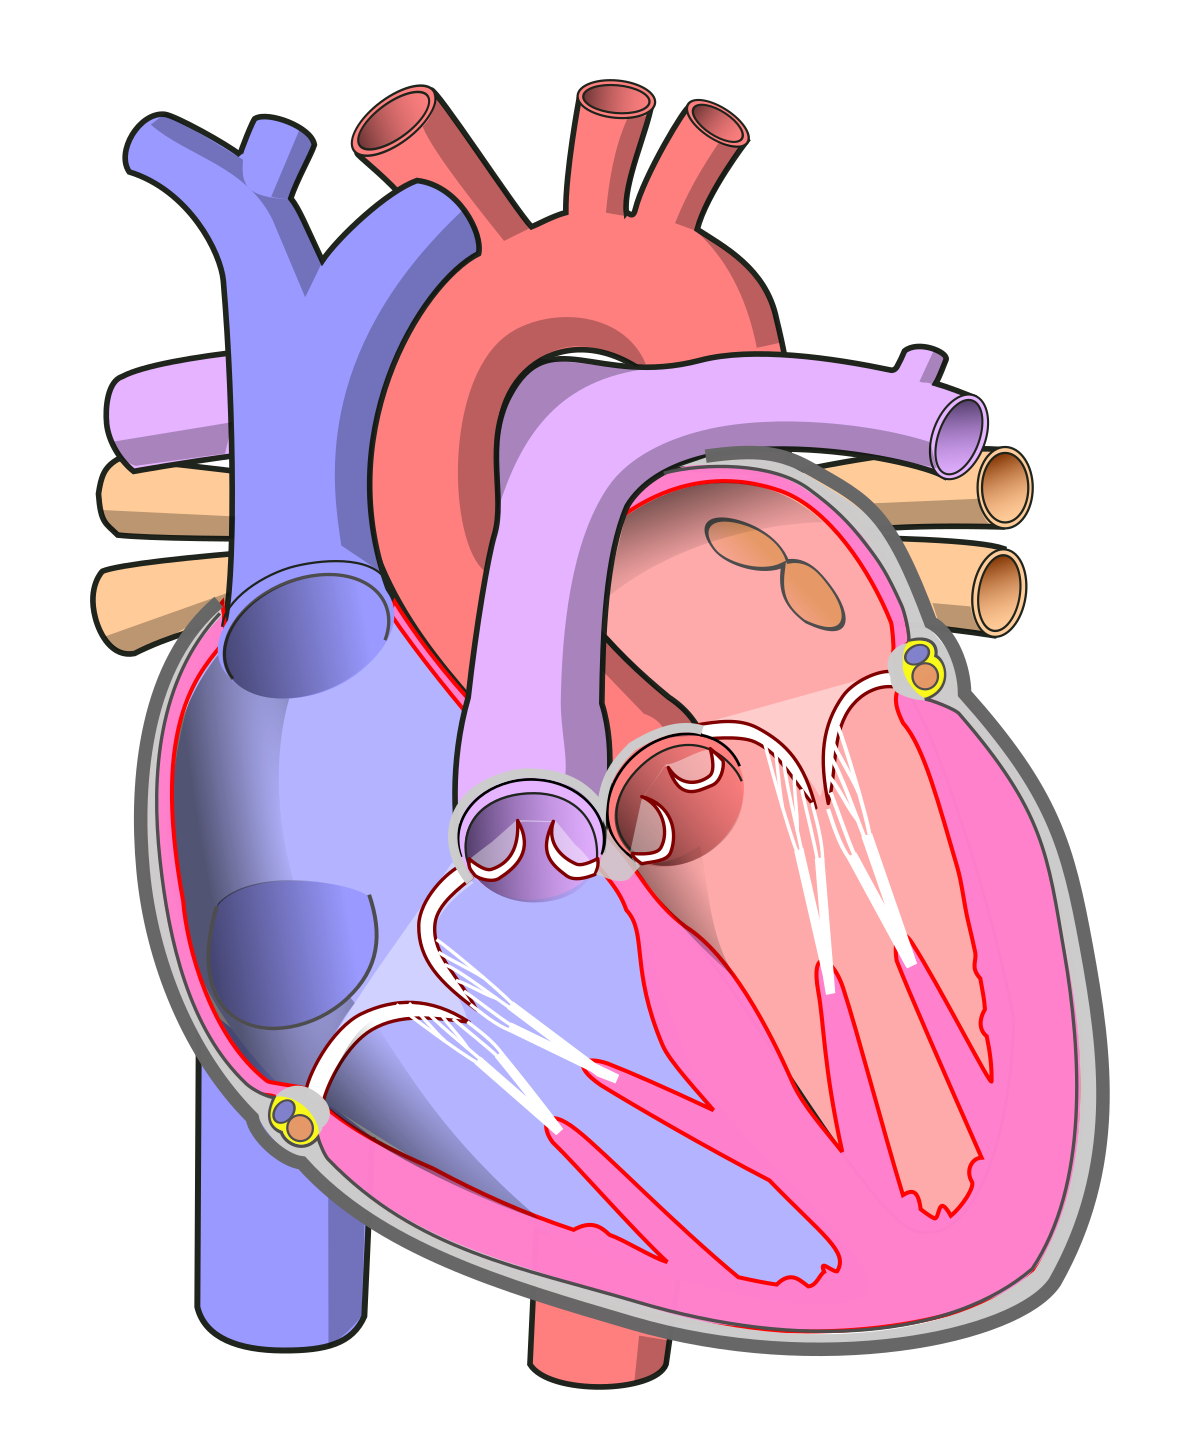 Imagem transparente do coração humano